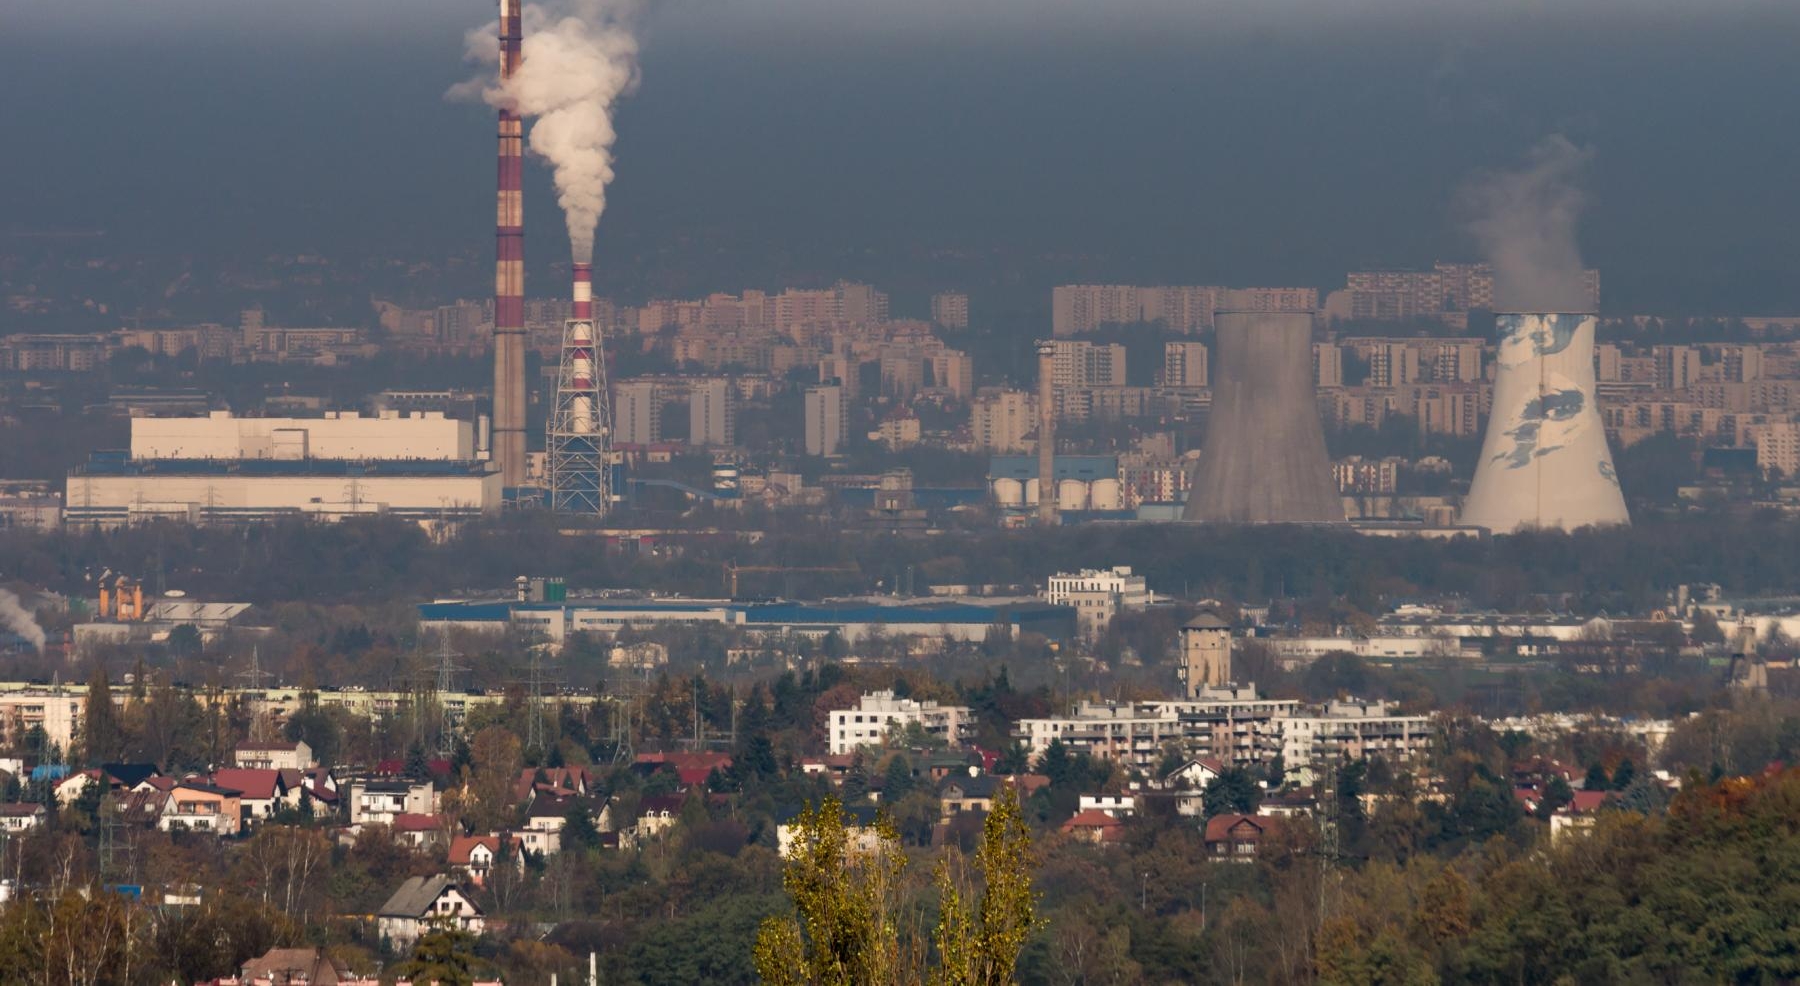 Małopolska: 31 gmin ukaranych za niedostateczną walkę ze smogiem. Fot. Tomasz Mazon/Shutterstock